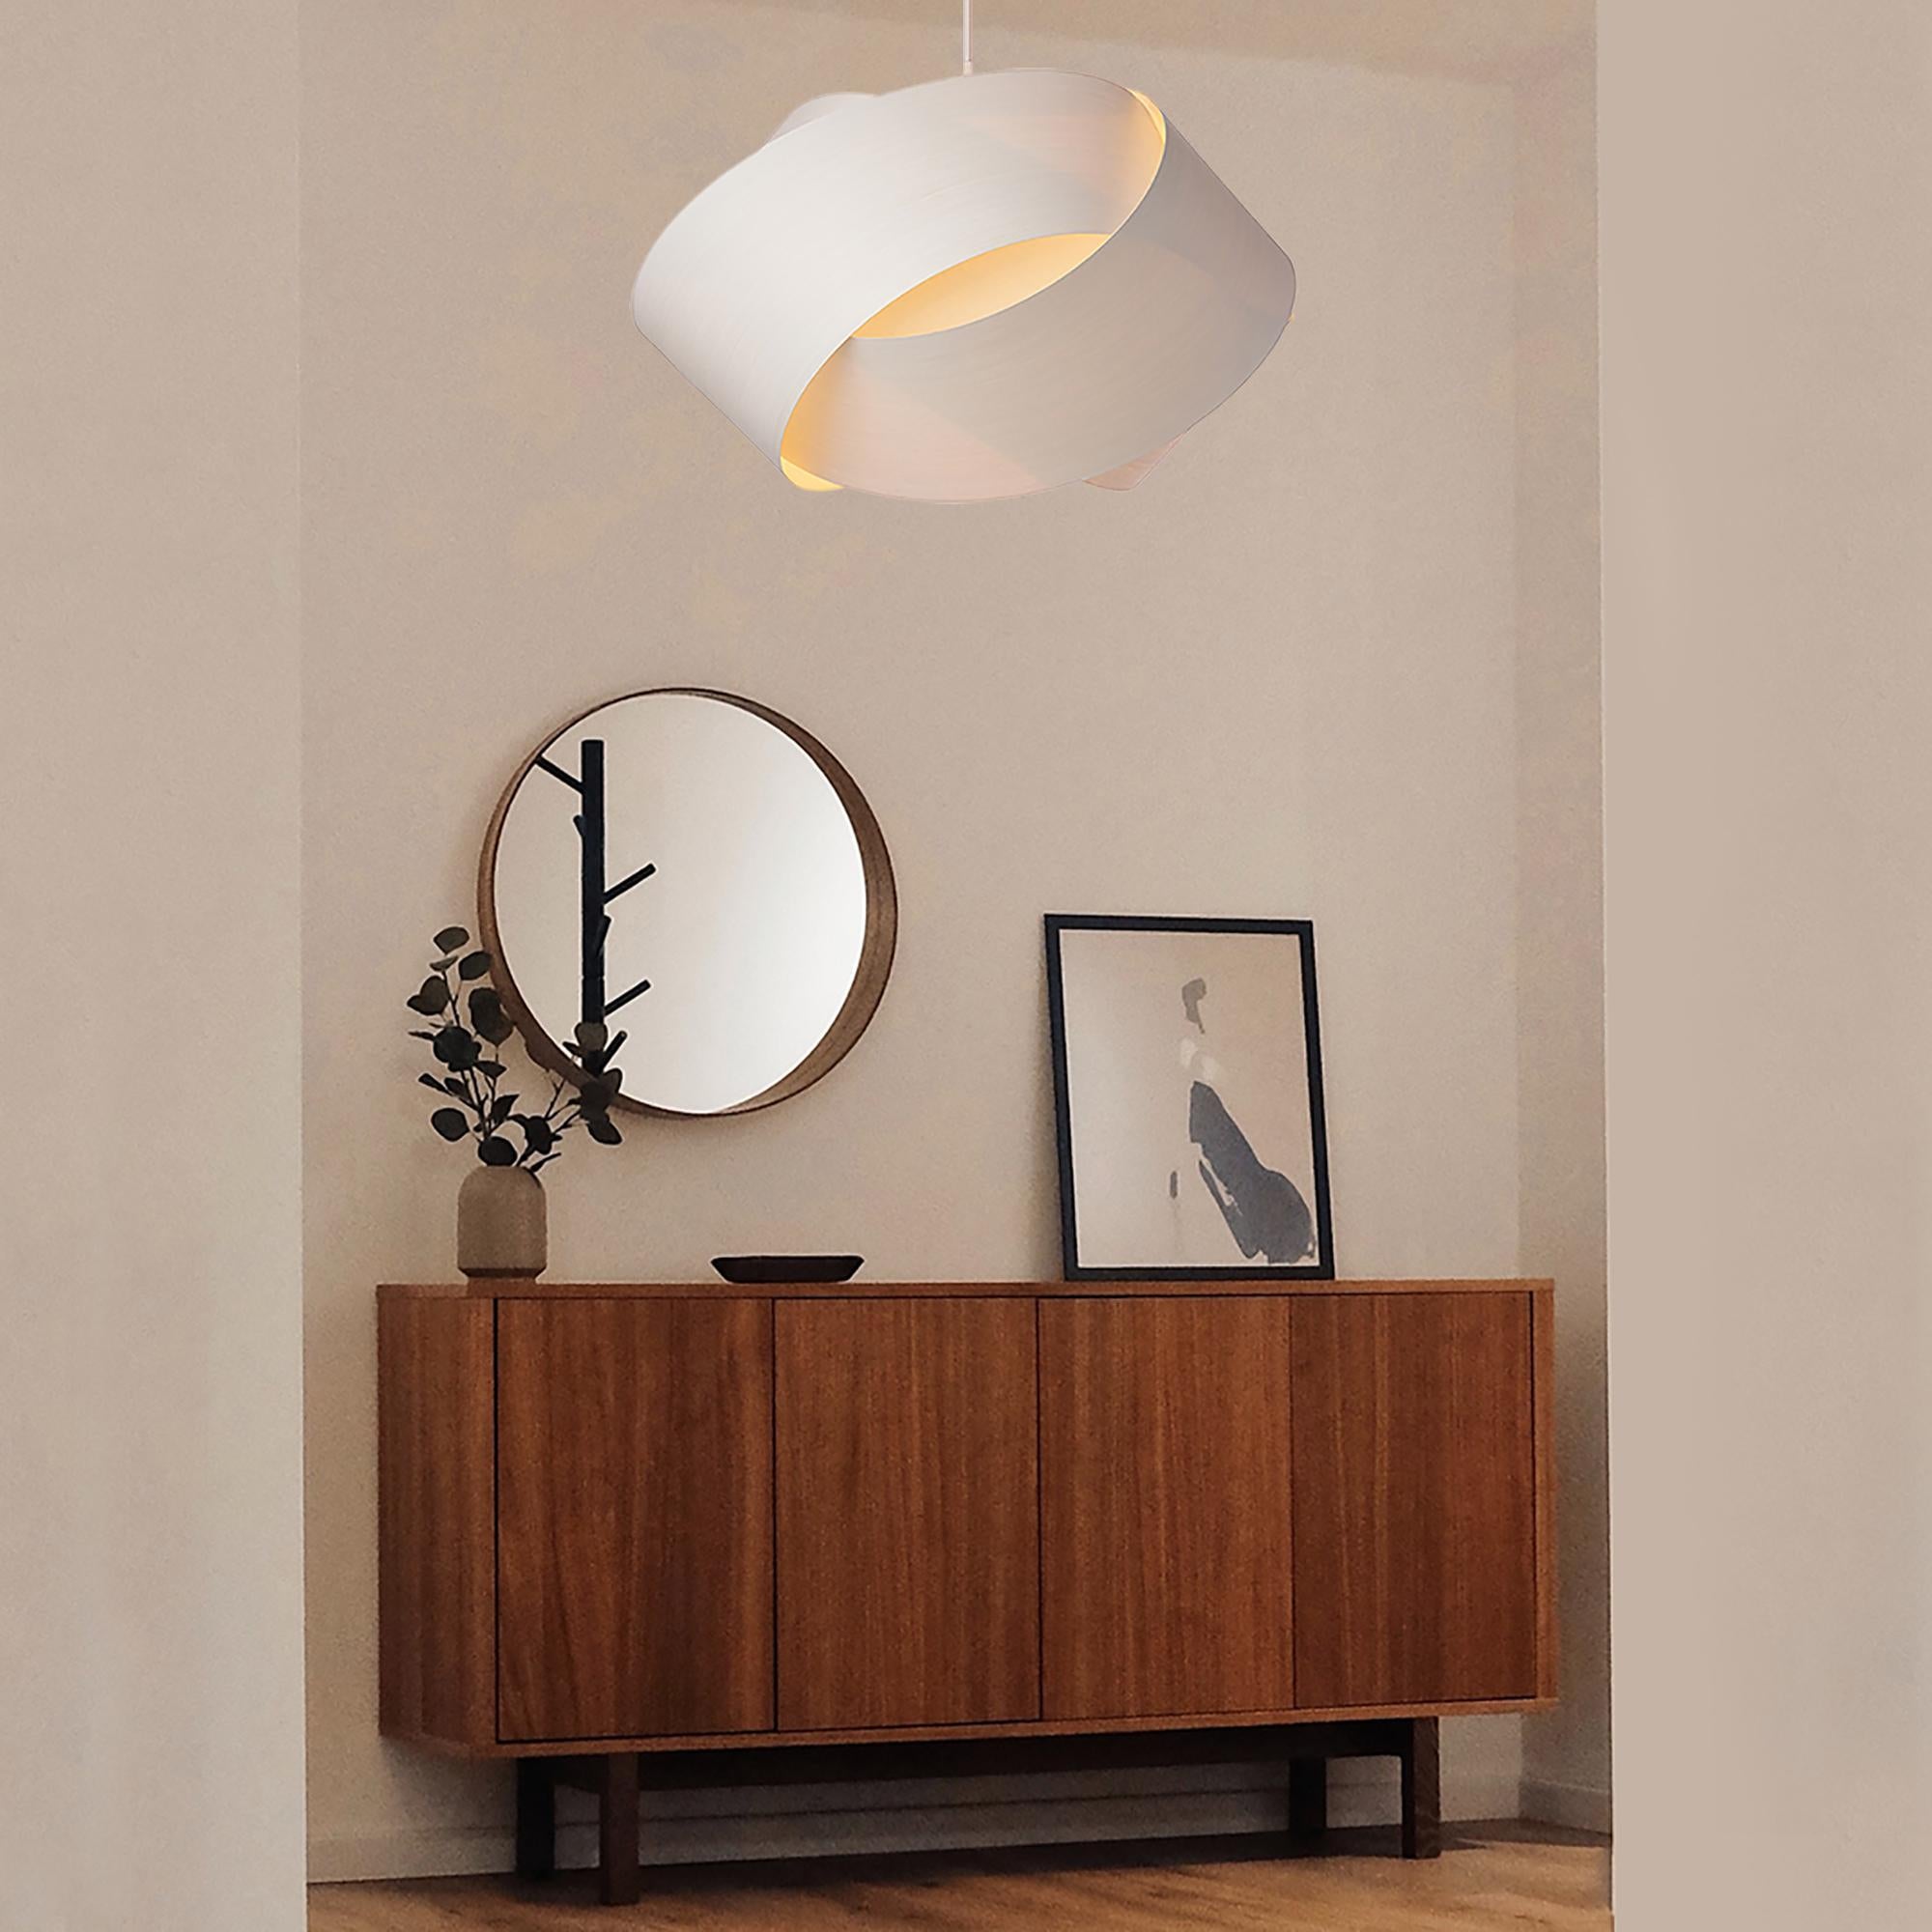 Die Pendelleuchte Serene ist eine zeitgenössische Mid-Century-Modern-Leuchte mit skandinavischem Design und organisch-moderner Komposition. Diese minimalistische, luxuriöse Pendelleuchte aus Holzfurnier ist die perfekte Lösung, um einen Hauch von